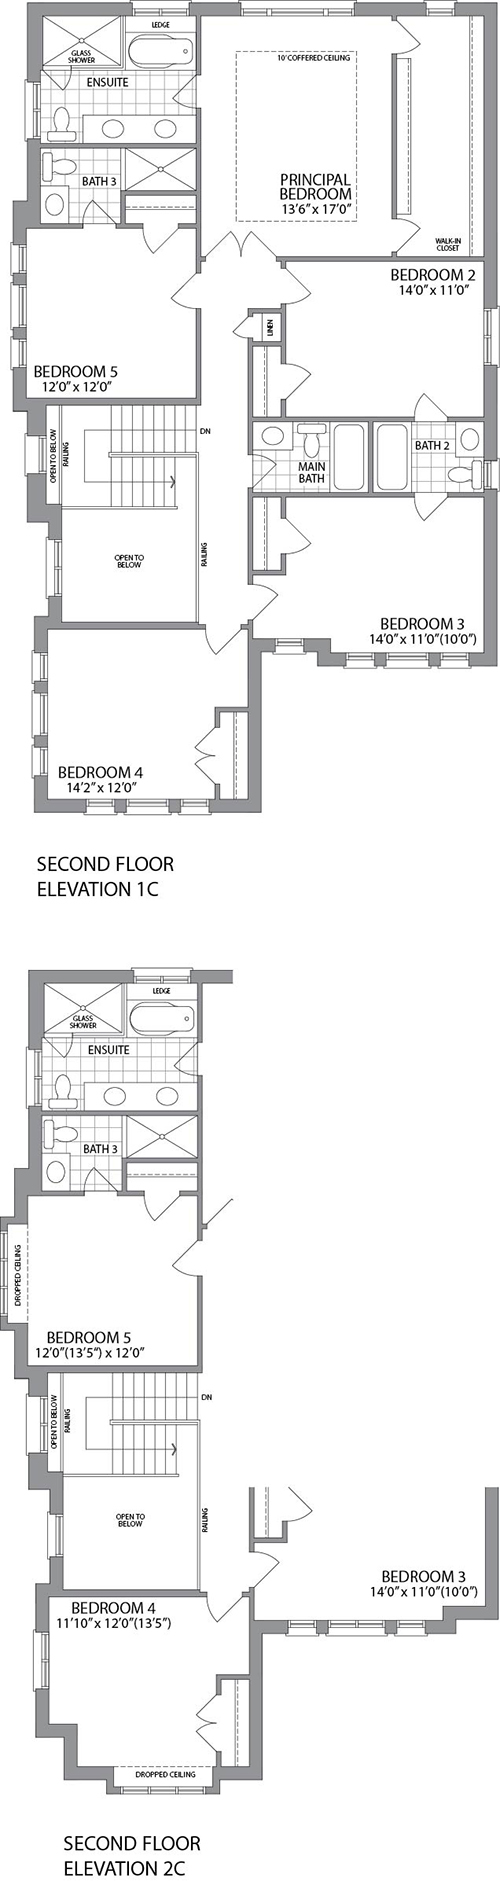  Second Floor